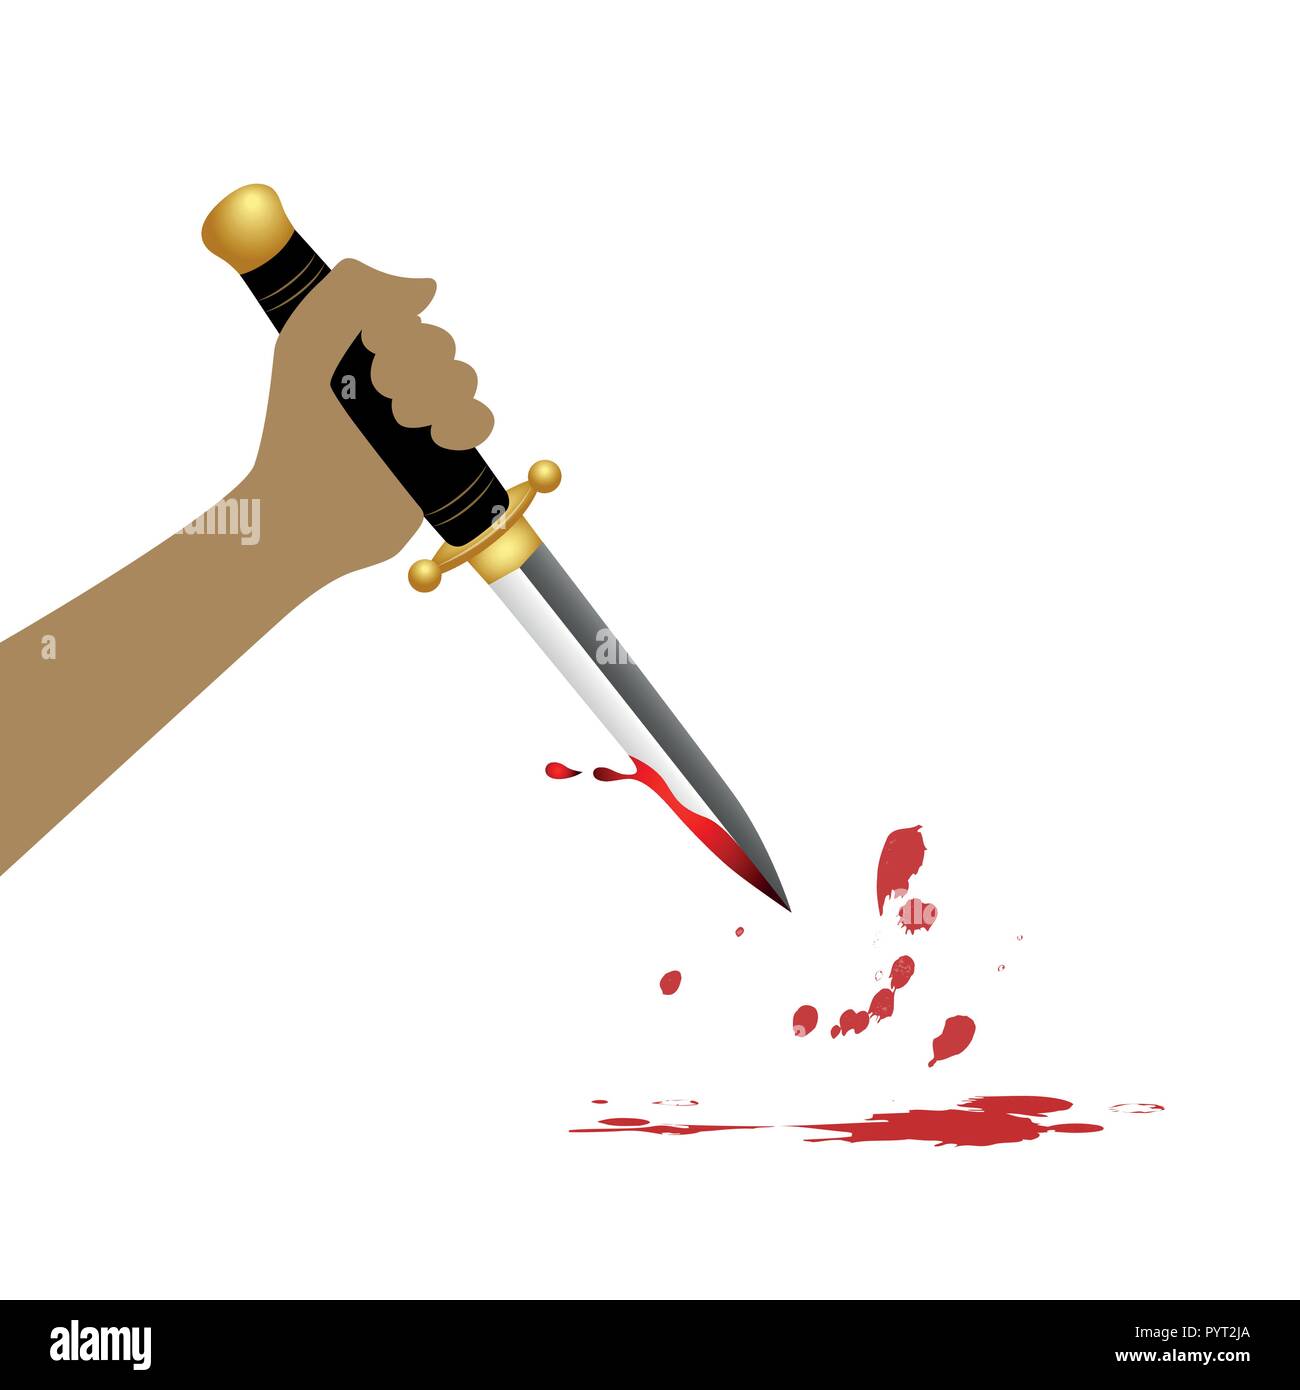 hand hold sharp boody dagger knife on white background vector illustration EPS10 Stock Vector